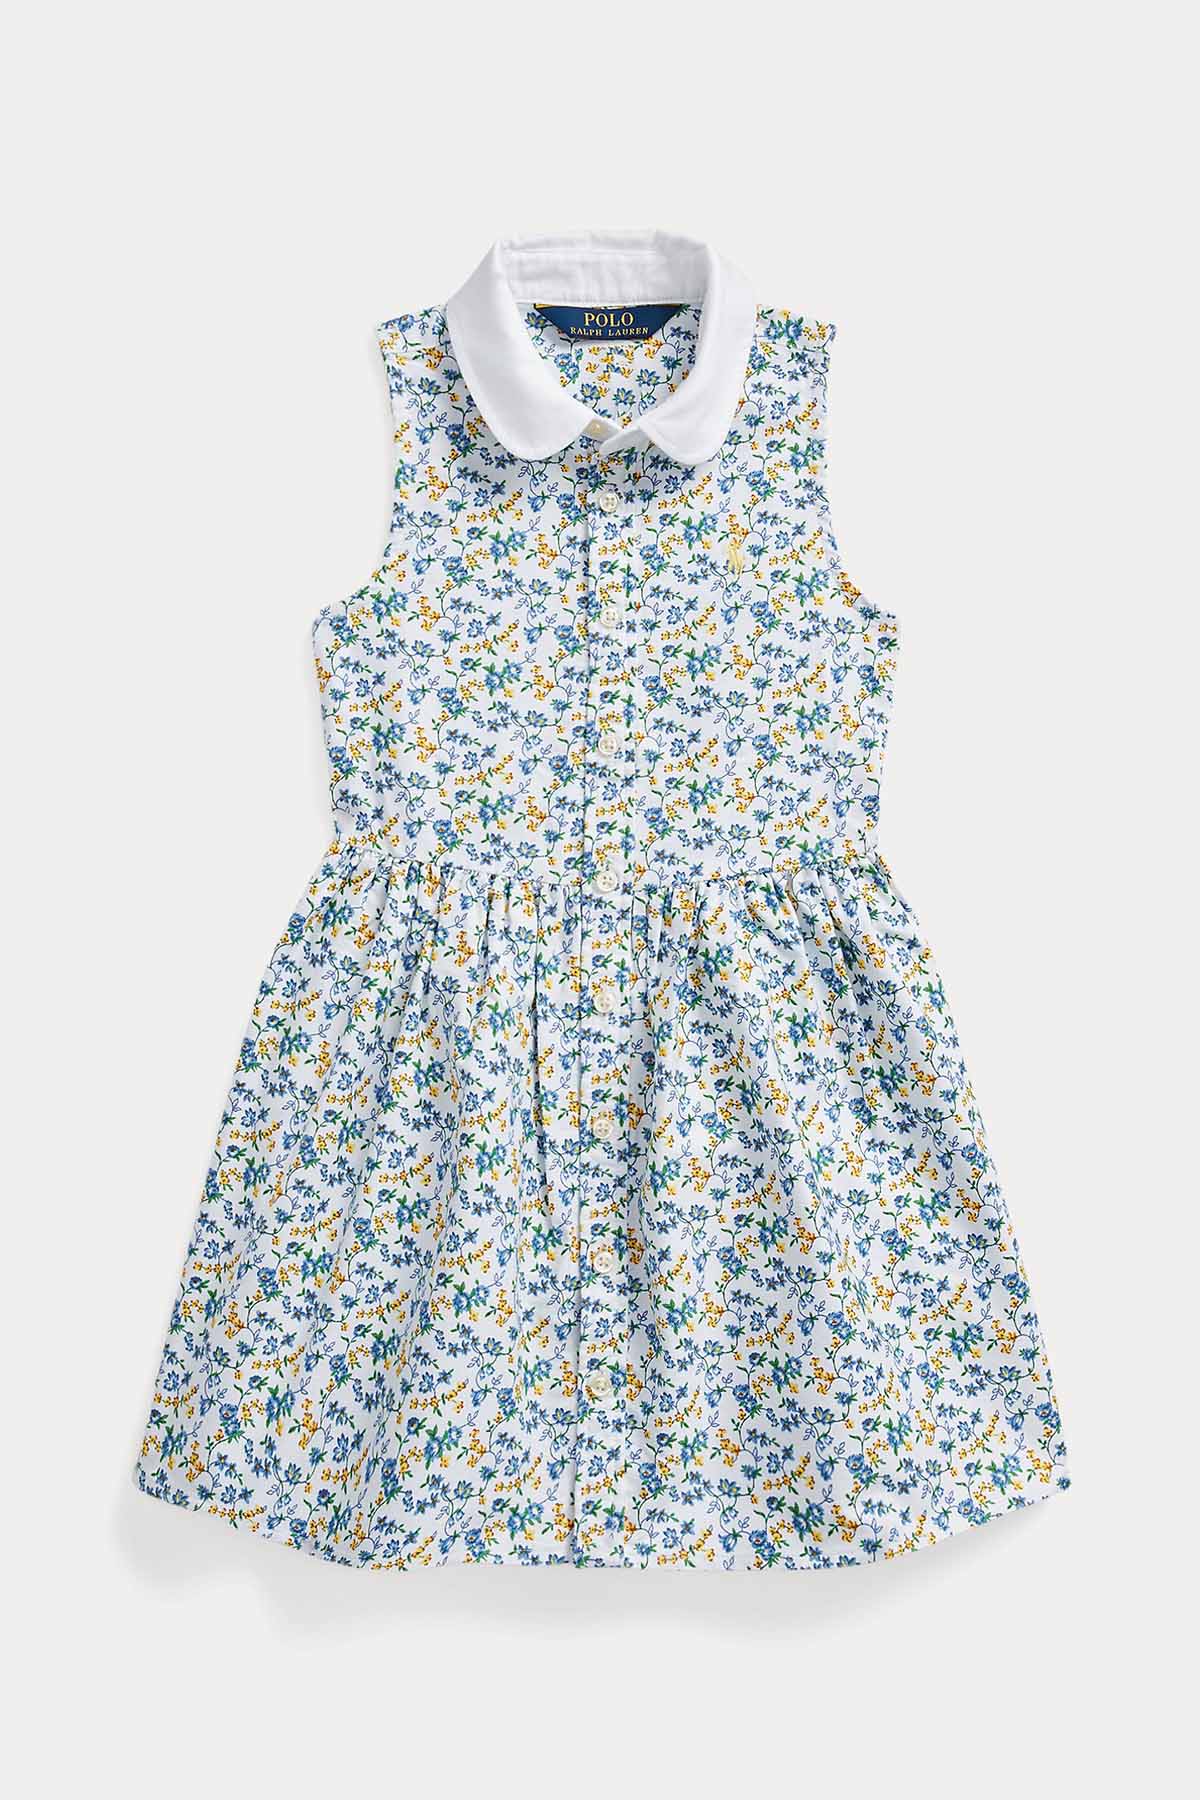 Polo Ralph Lauren Kids 2-4 Yaş Kız Çocuk Çiçek Desenli Gömlek Elbise